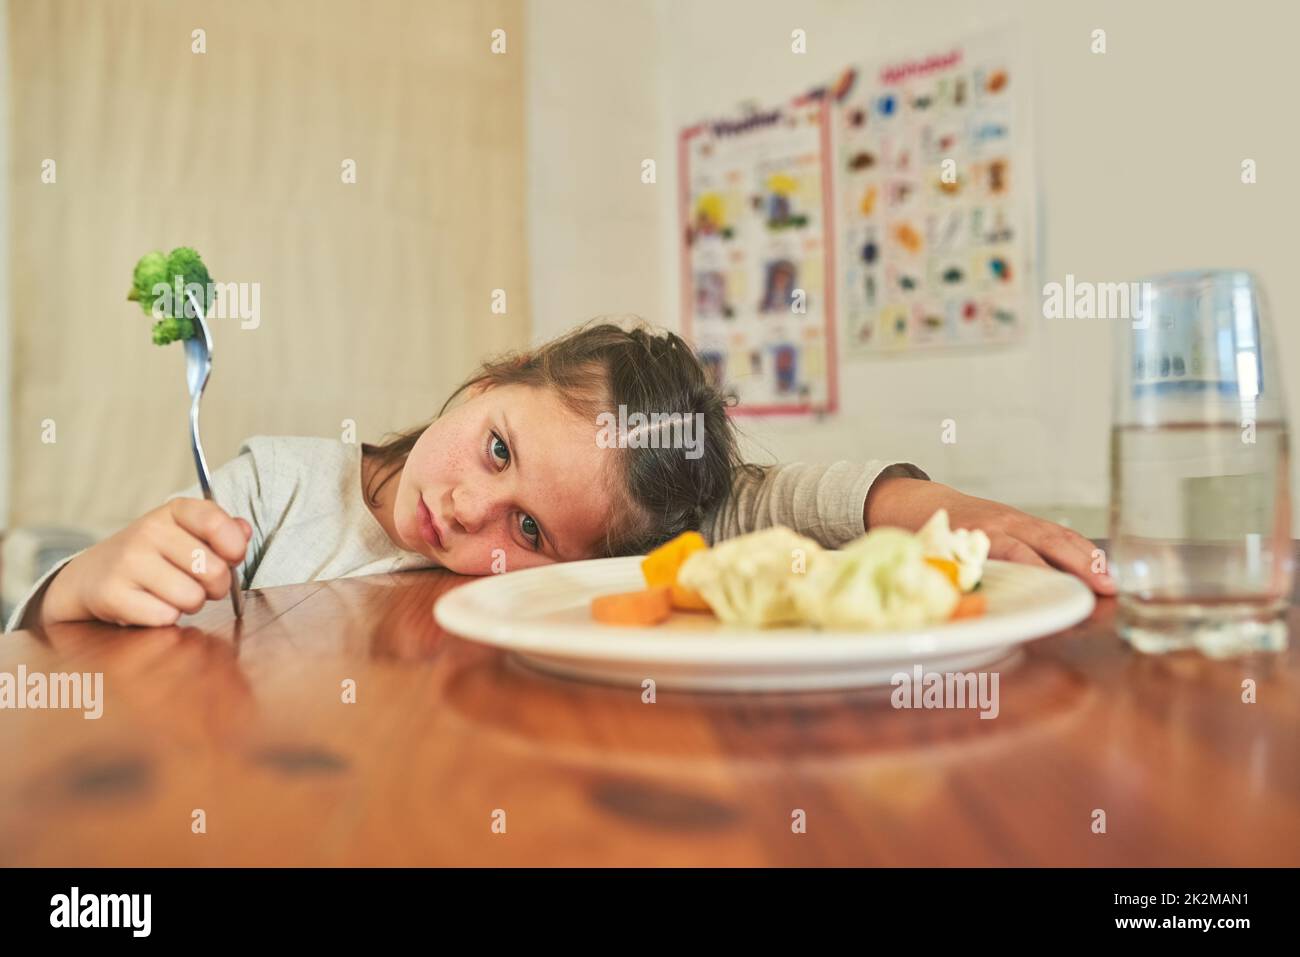 Ihr könnt mich nicht dazu bringen, dies zu essen. Aufnahme eines kleinen Mädchens, das sich weigert, ihren Brokkoli zu essen. Stockfoto